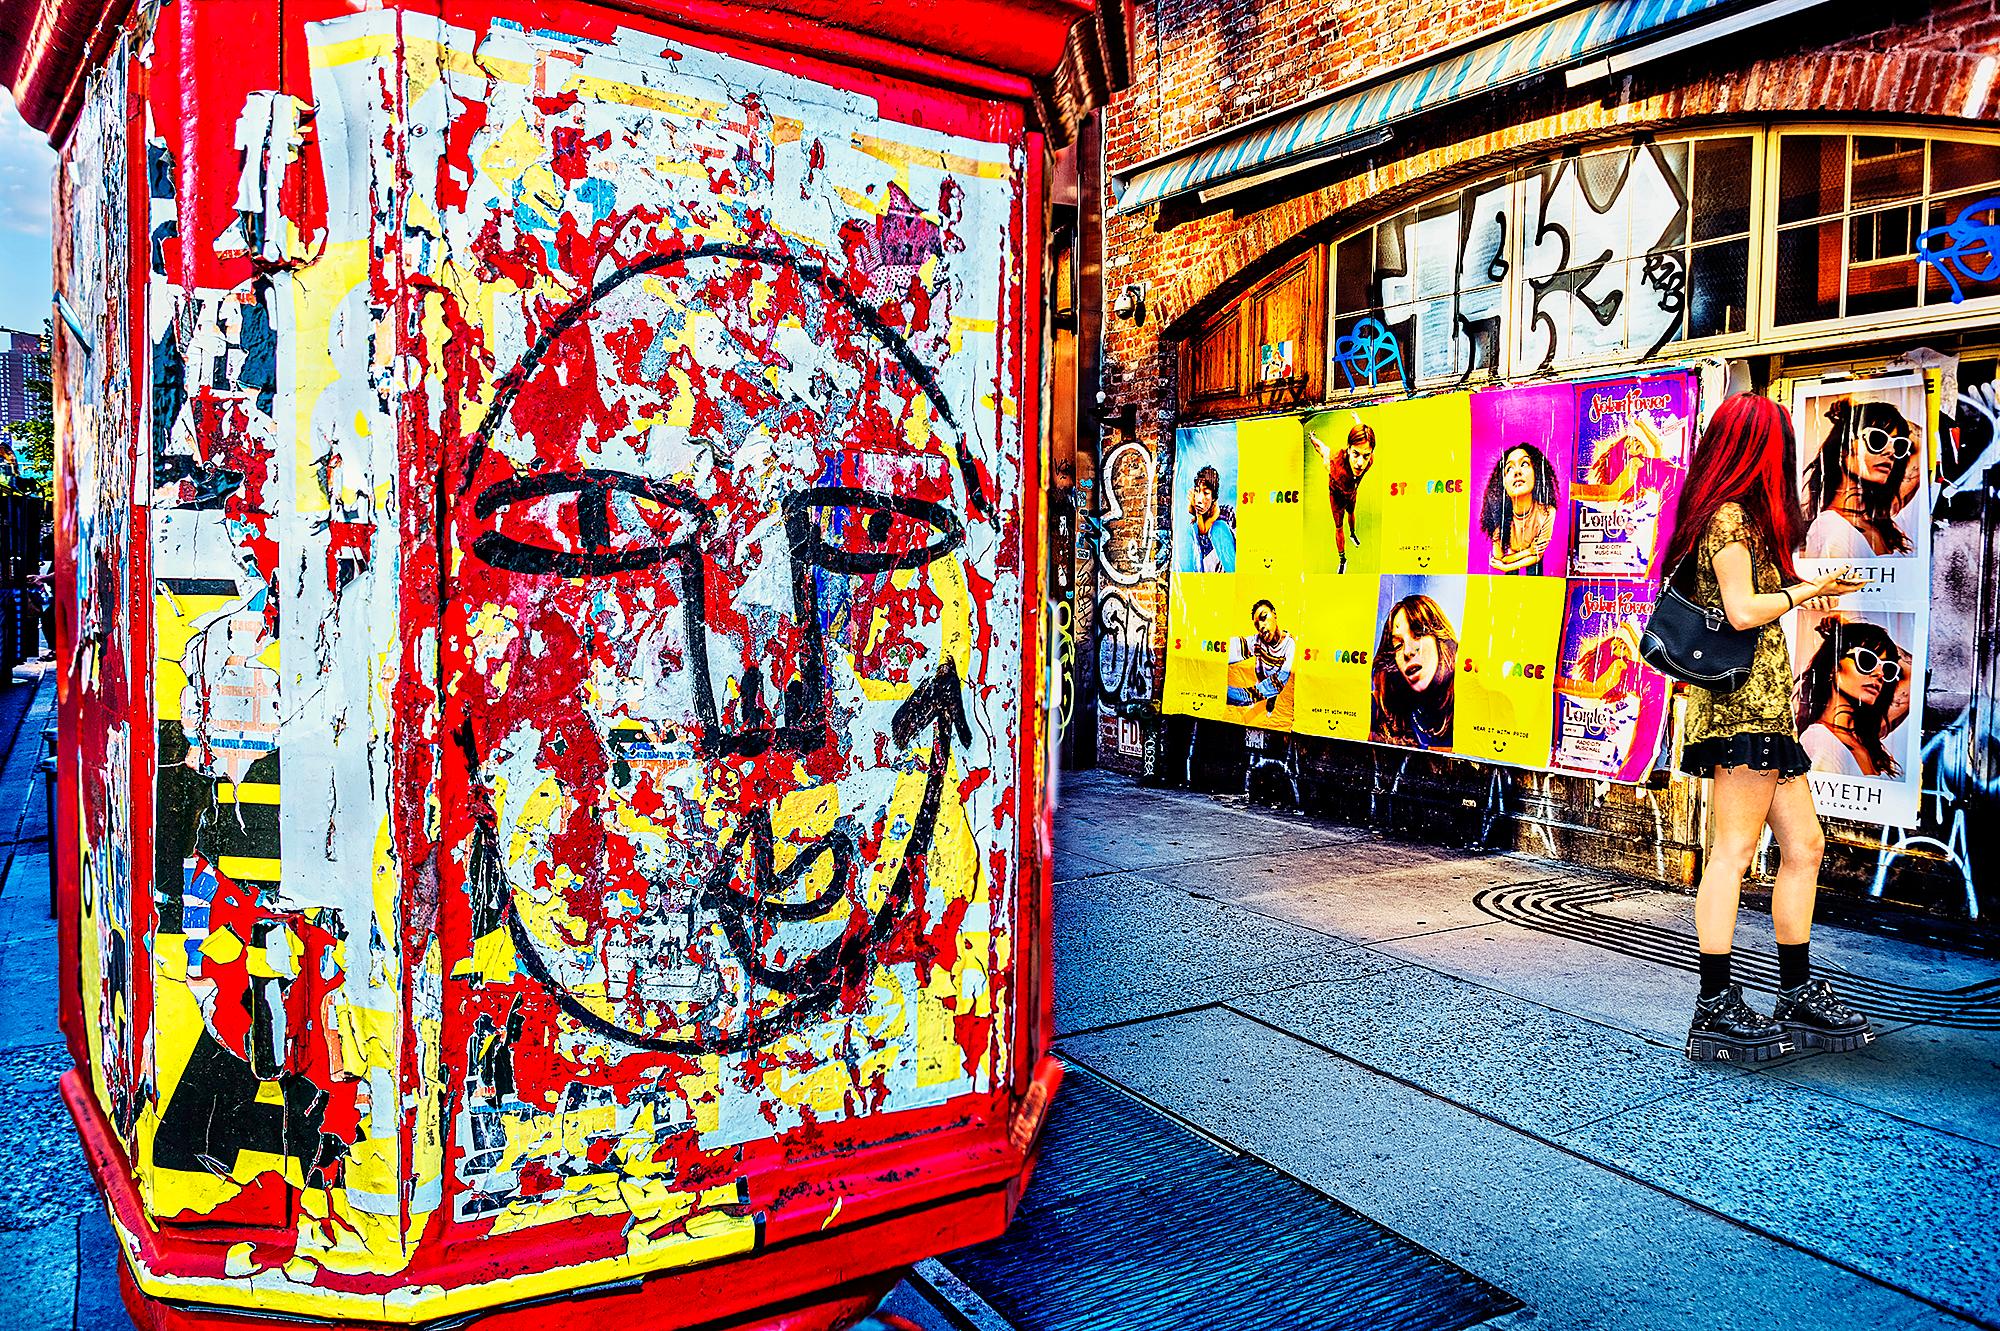 La jeune fille à la tête rouge dans le nœud - Photographie de rue graffiti 